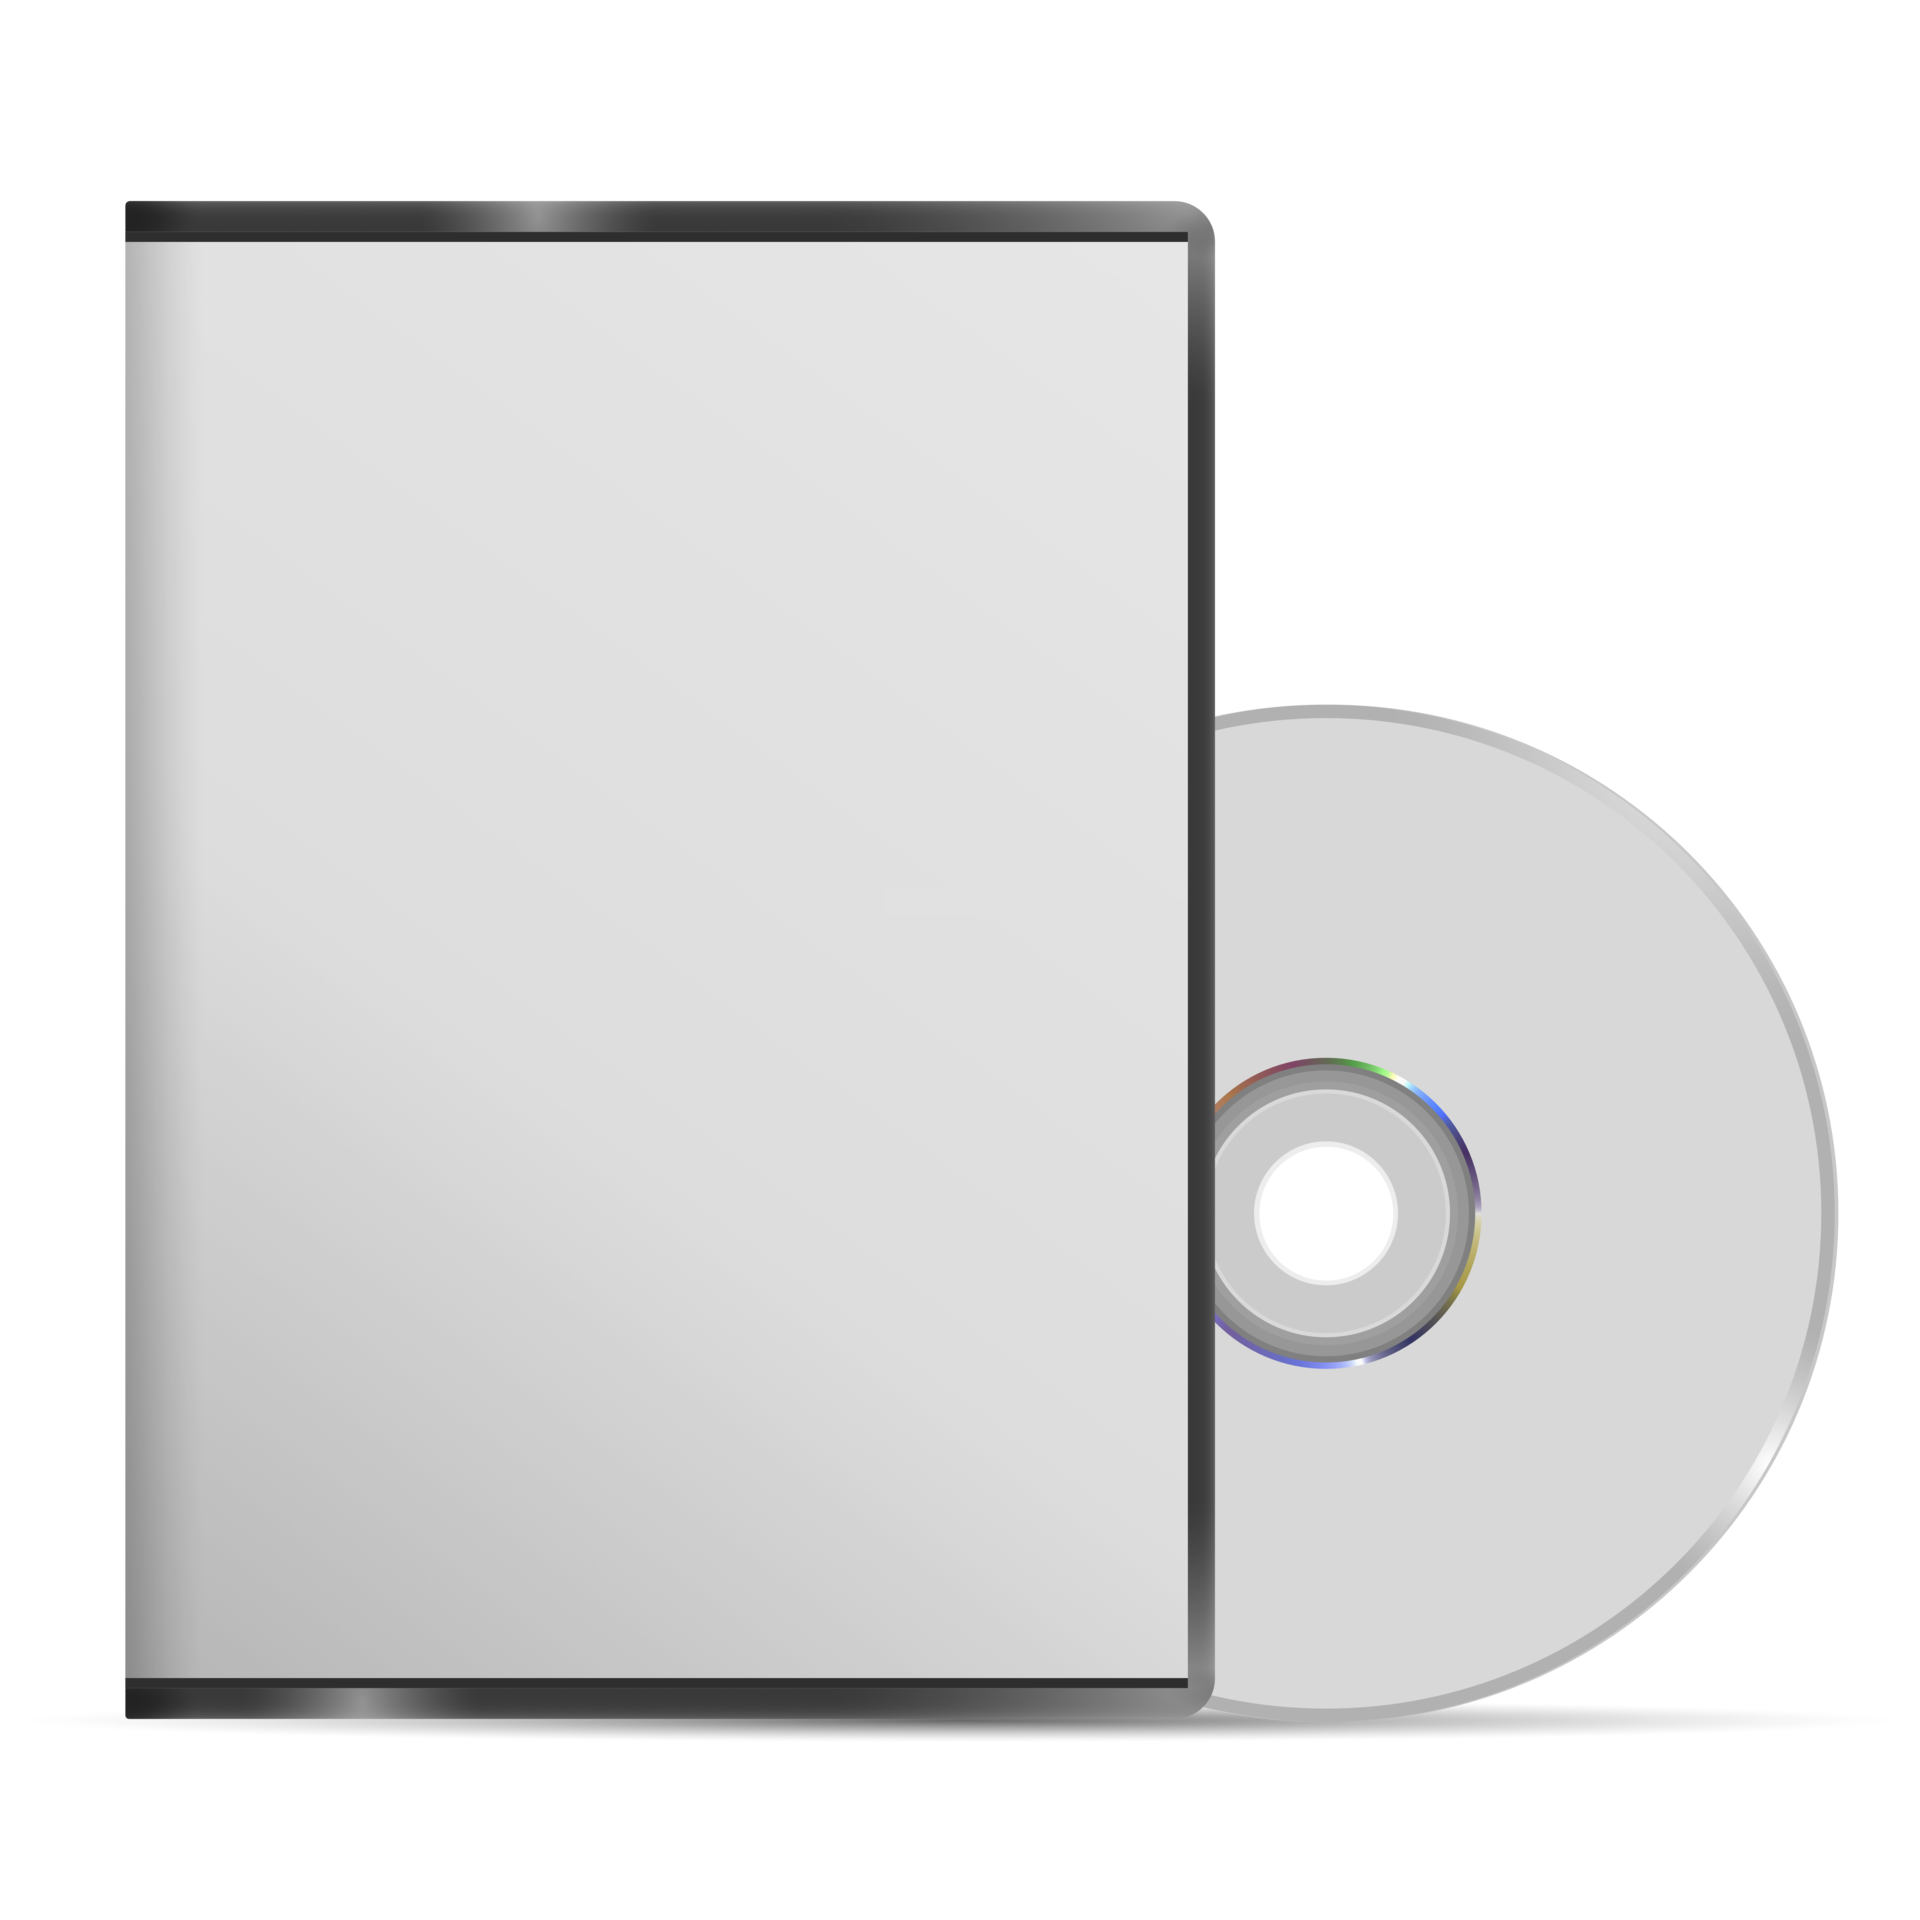 Uiterlijk zingen moeilijk tevreden te krijgen Free Blank DVD case and disc 13442196 PNG with Transparent Background